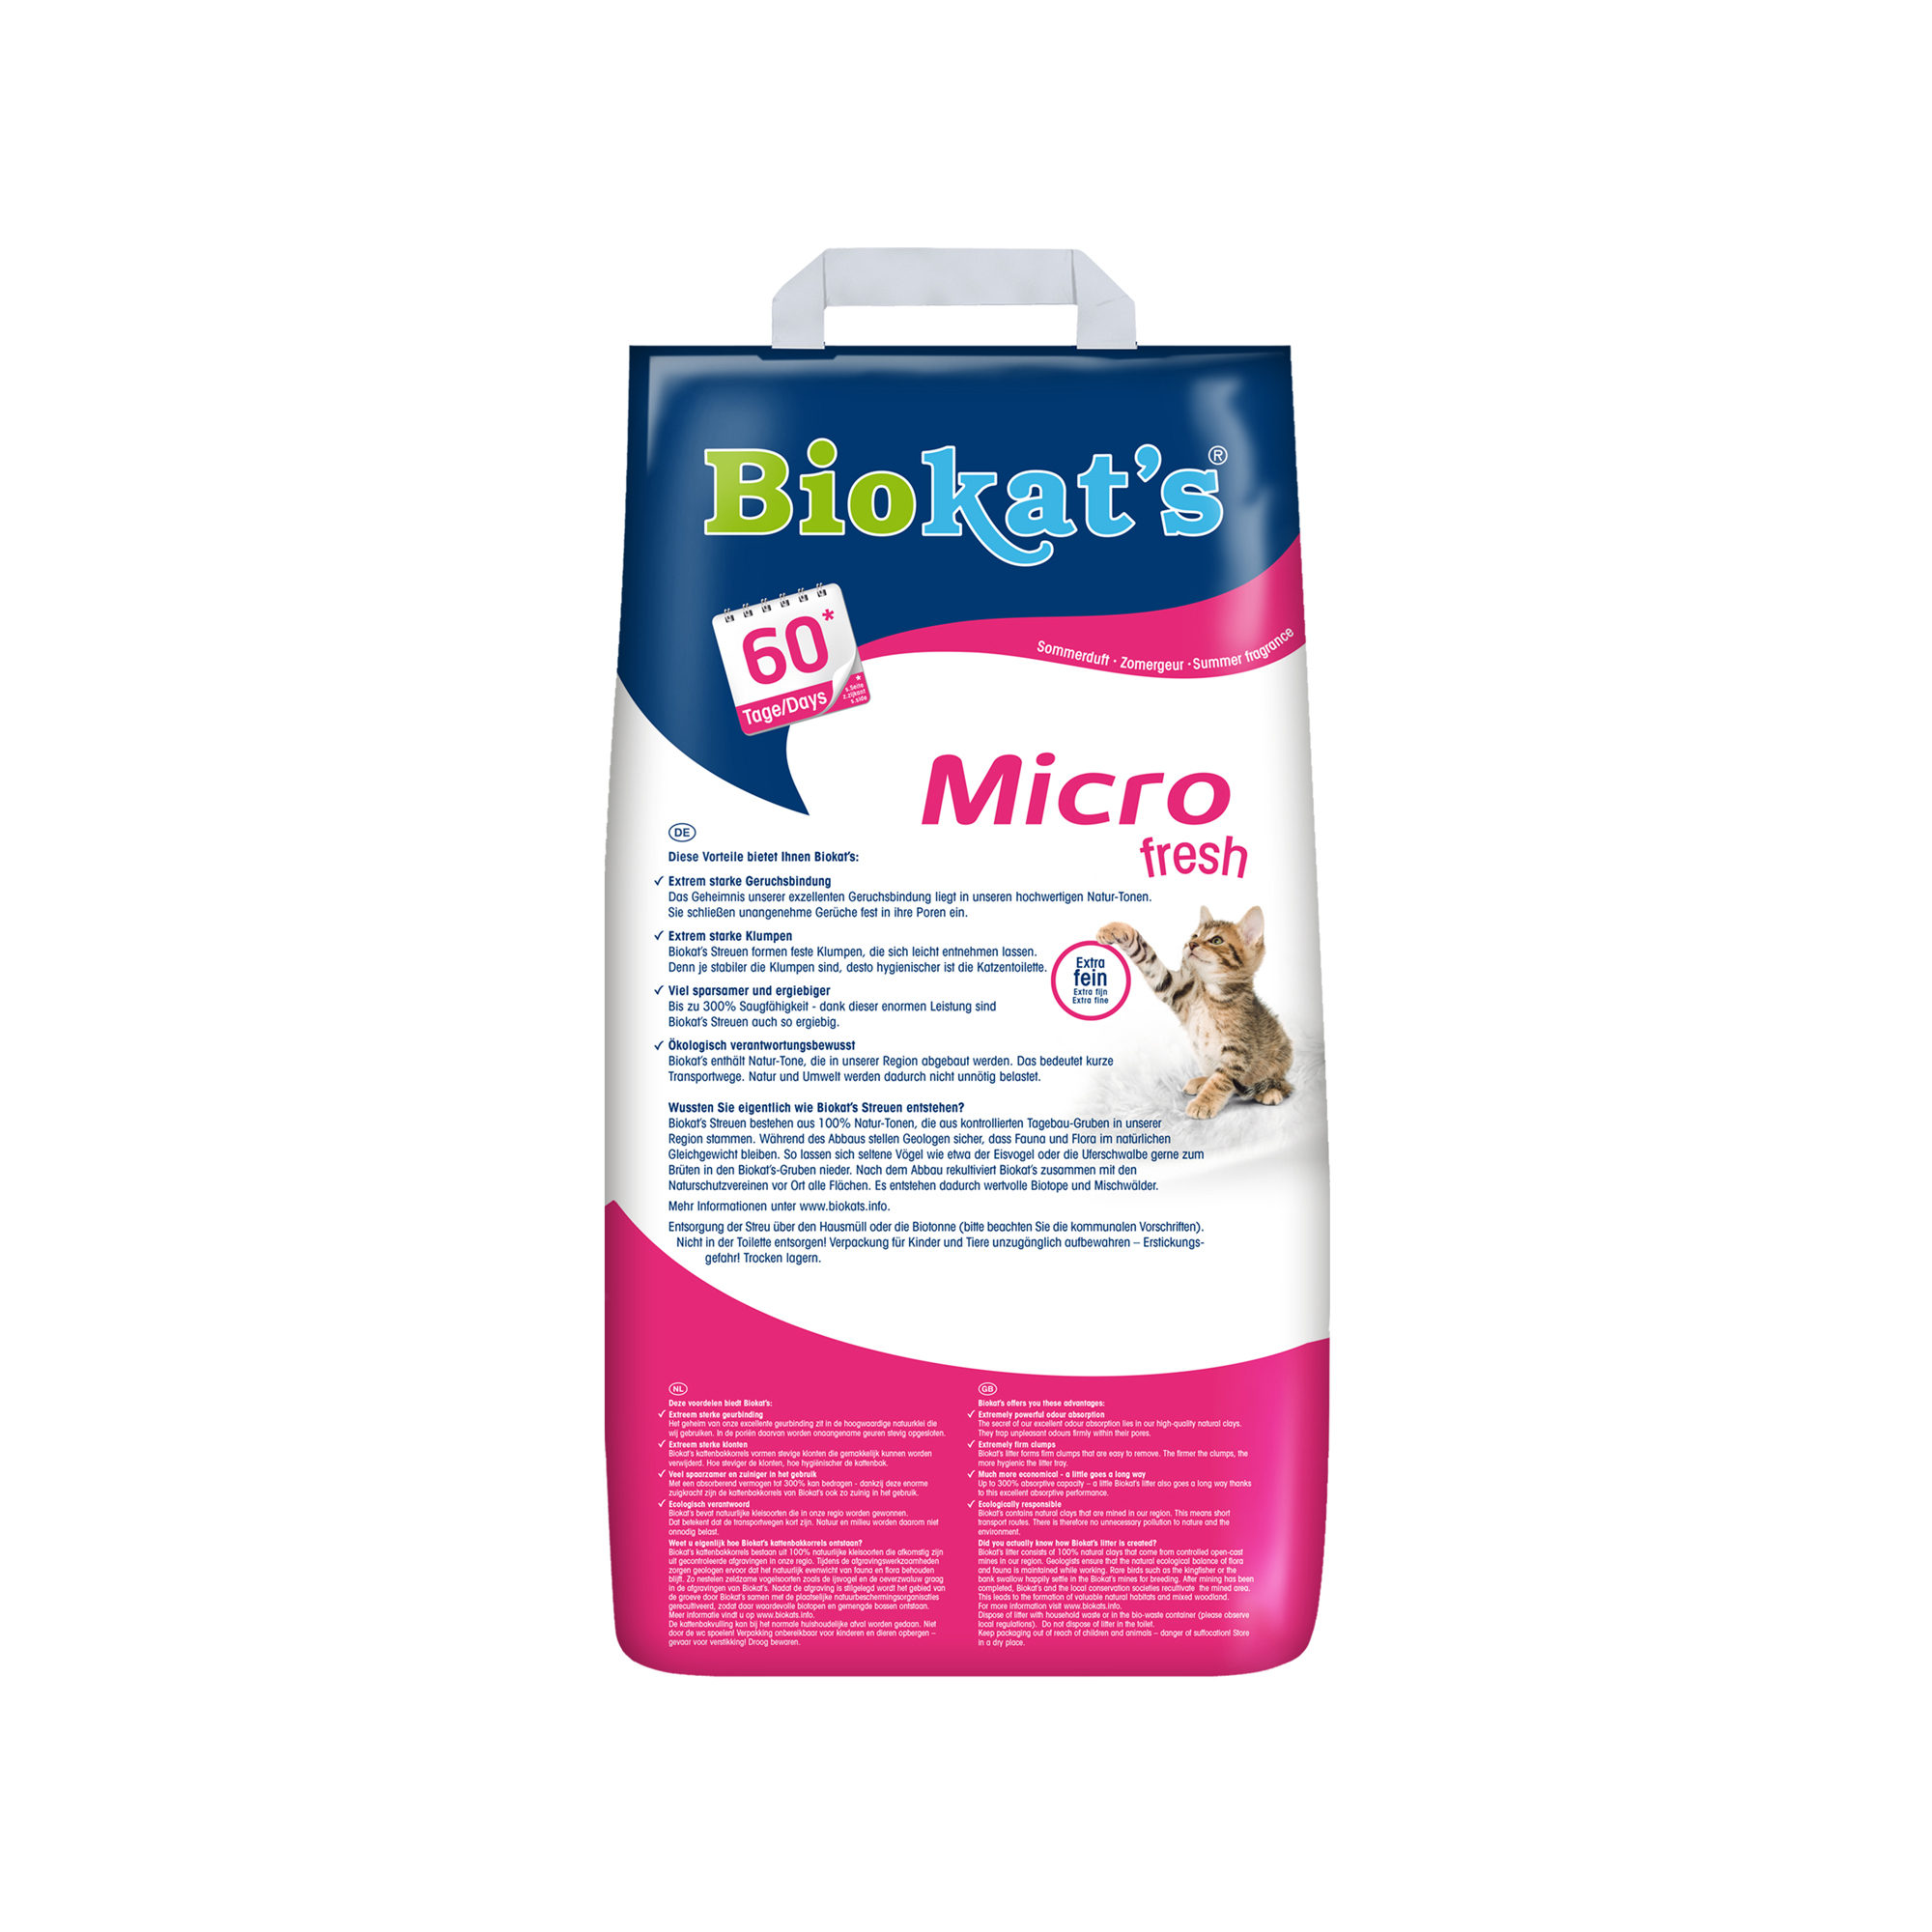 Biokat's Micro (Fresh) - Litière pour Chat